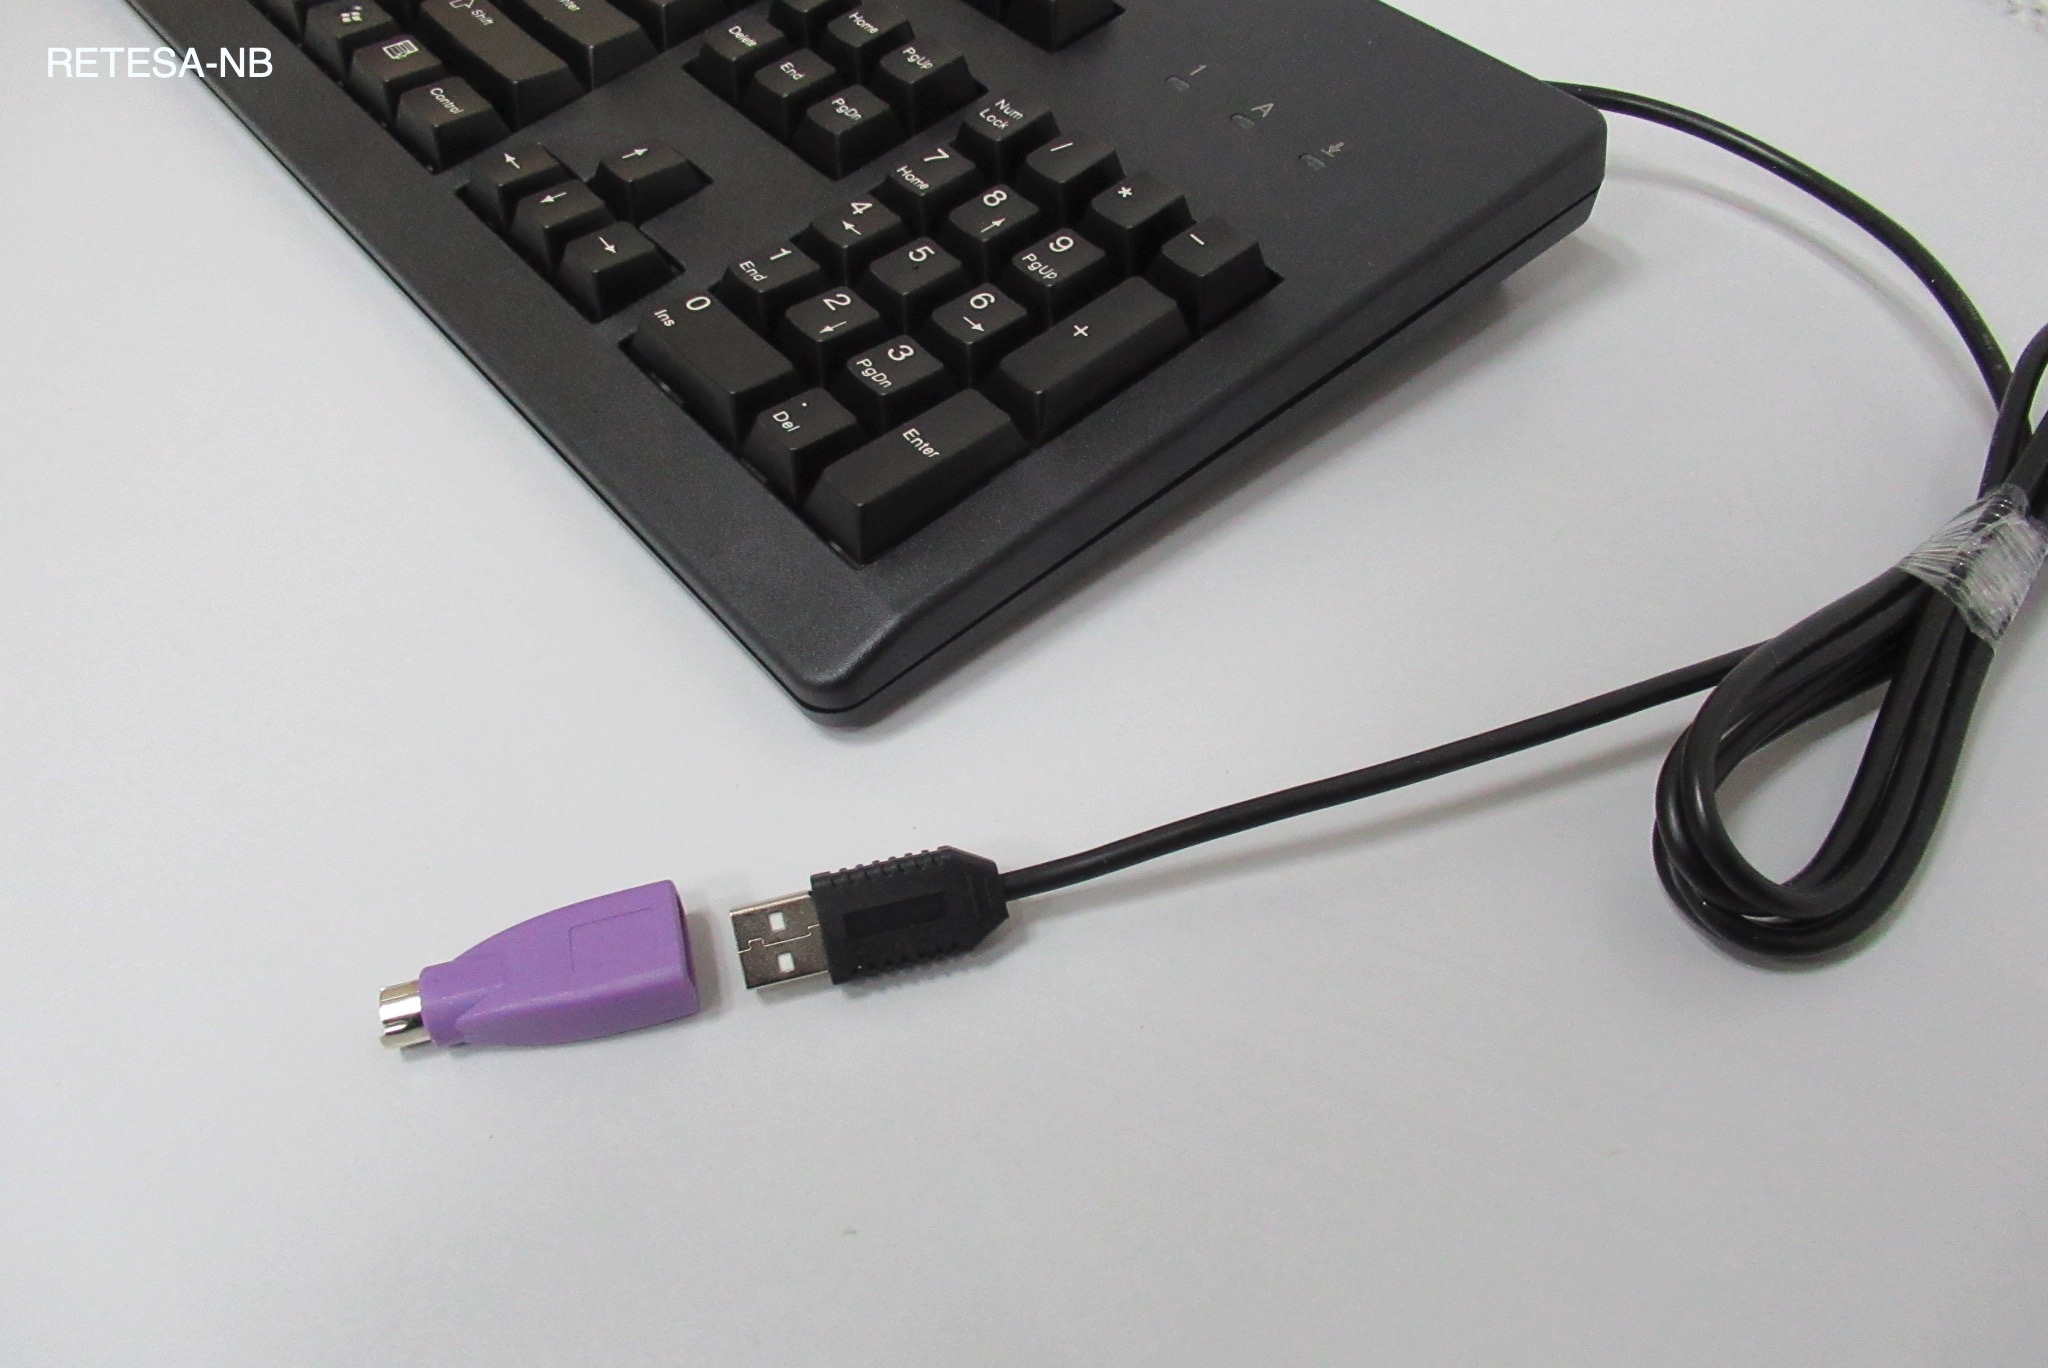 USB-Tastatur CHERRY G81-3000 schwarz, ENGLISCH !!